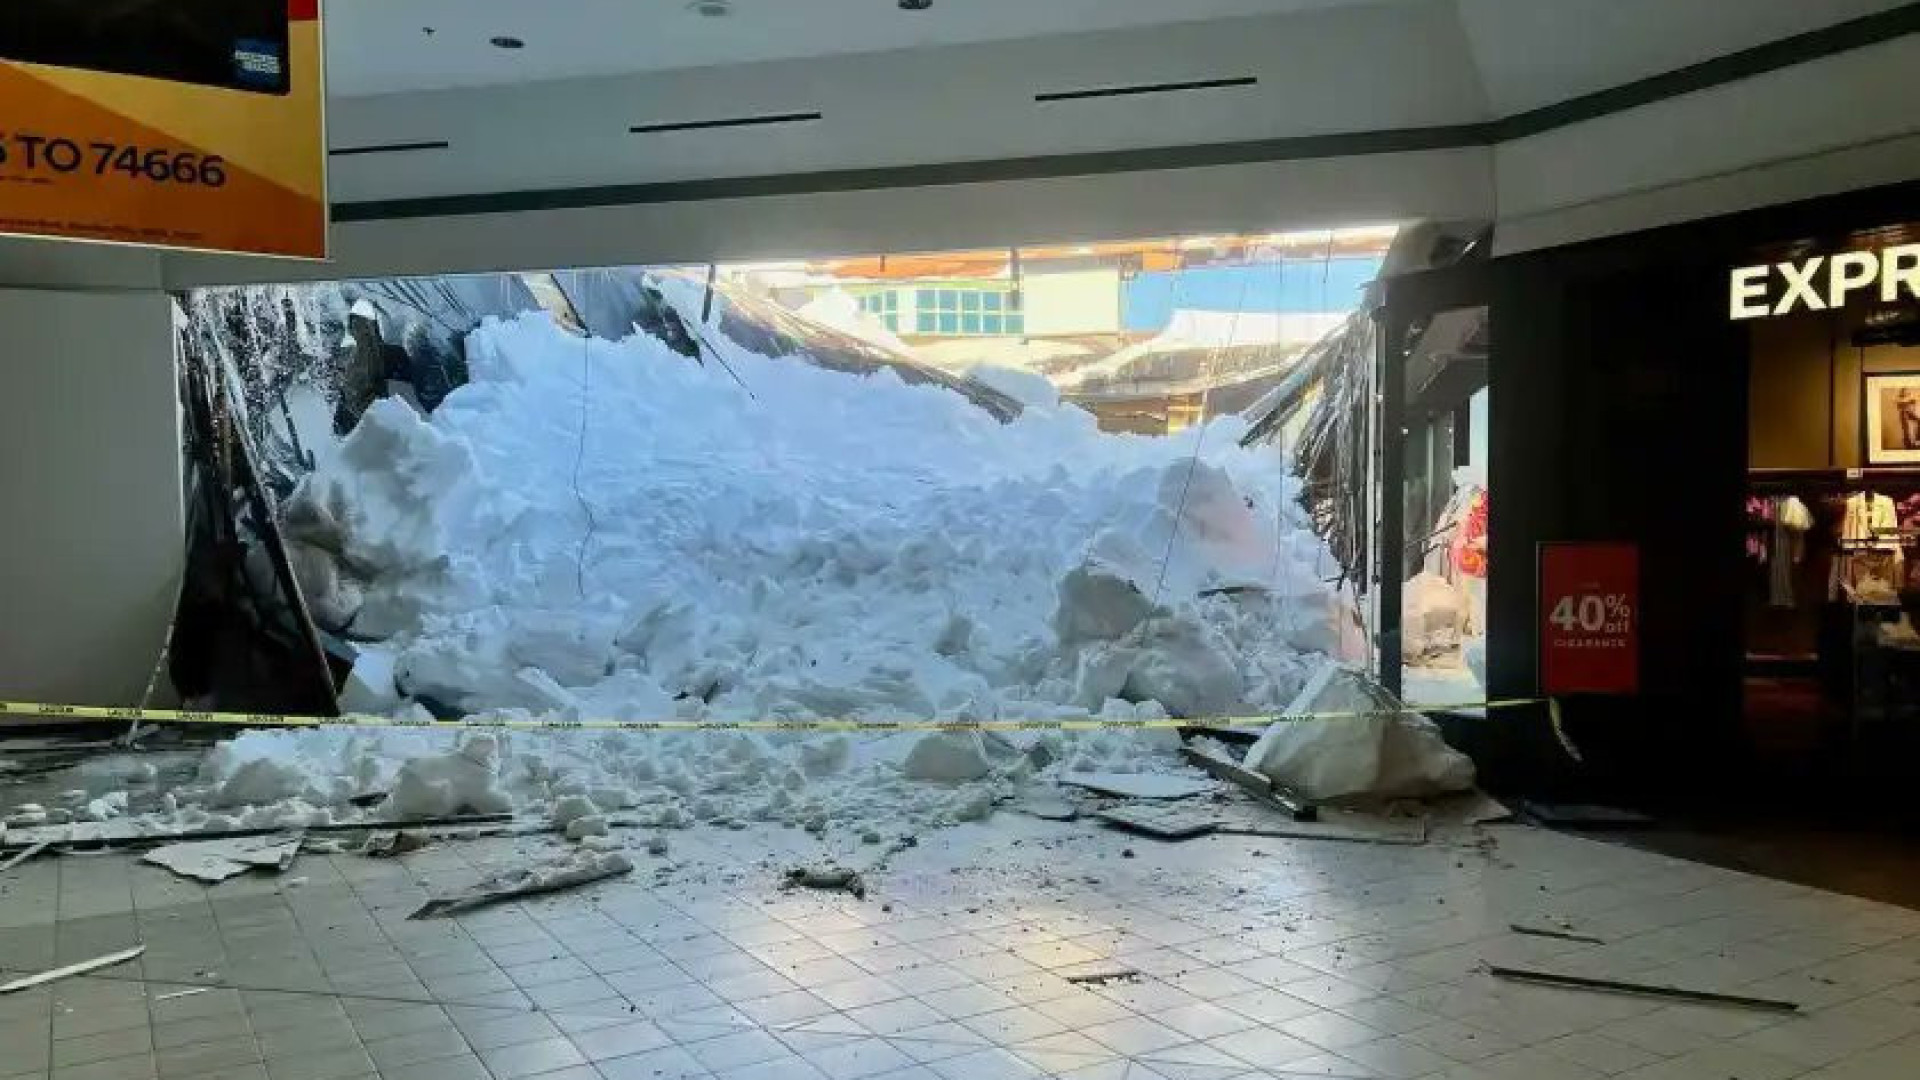 Neve faz teto de centro comercial colapsar nos EUA